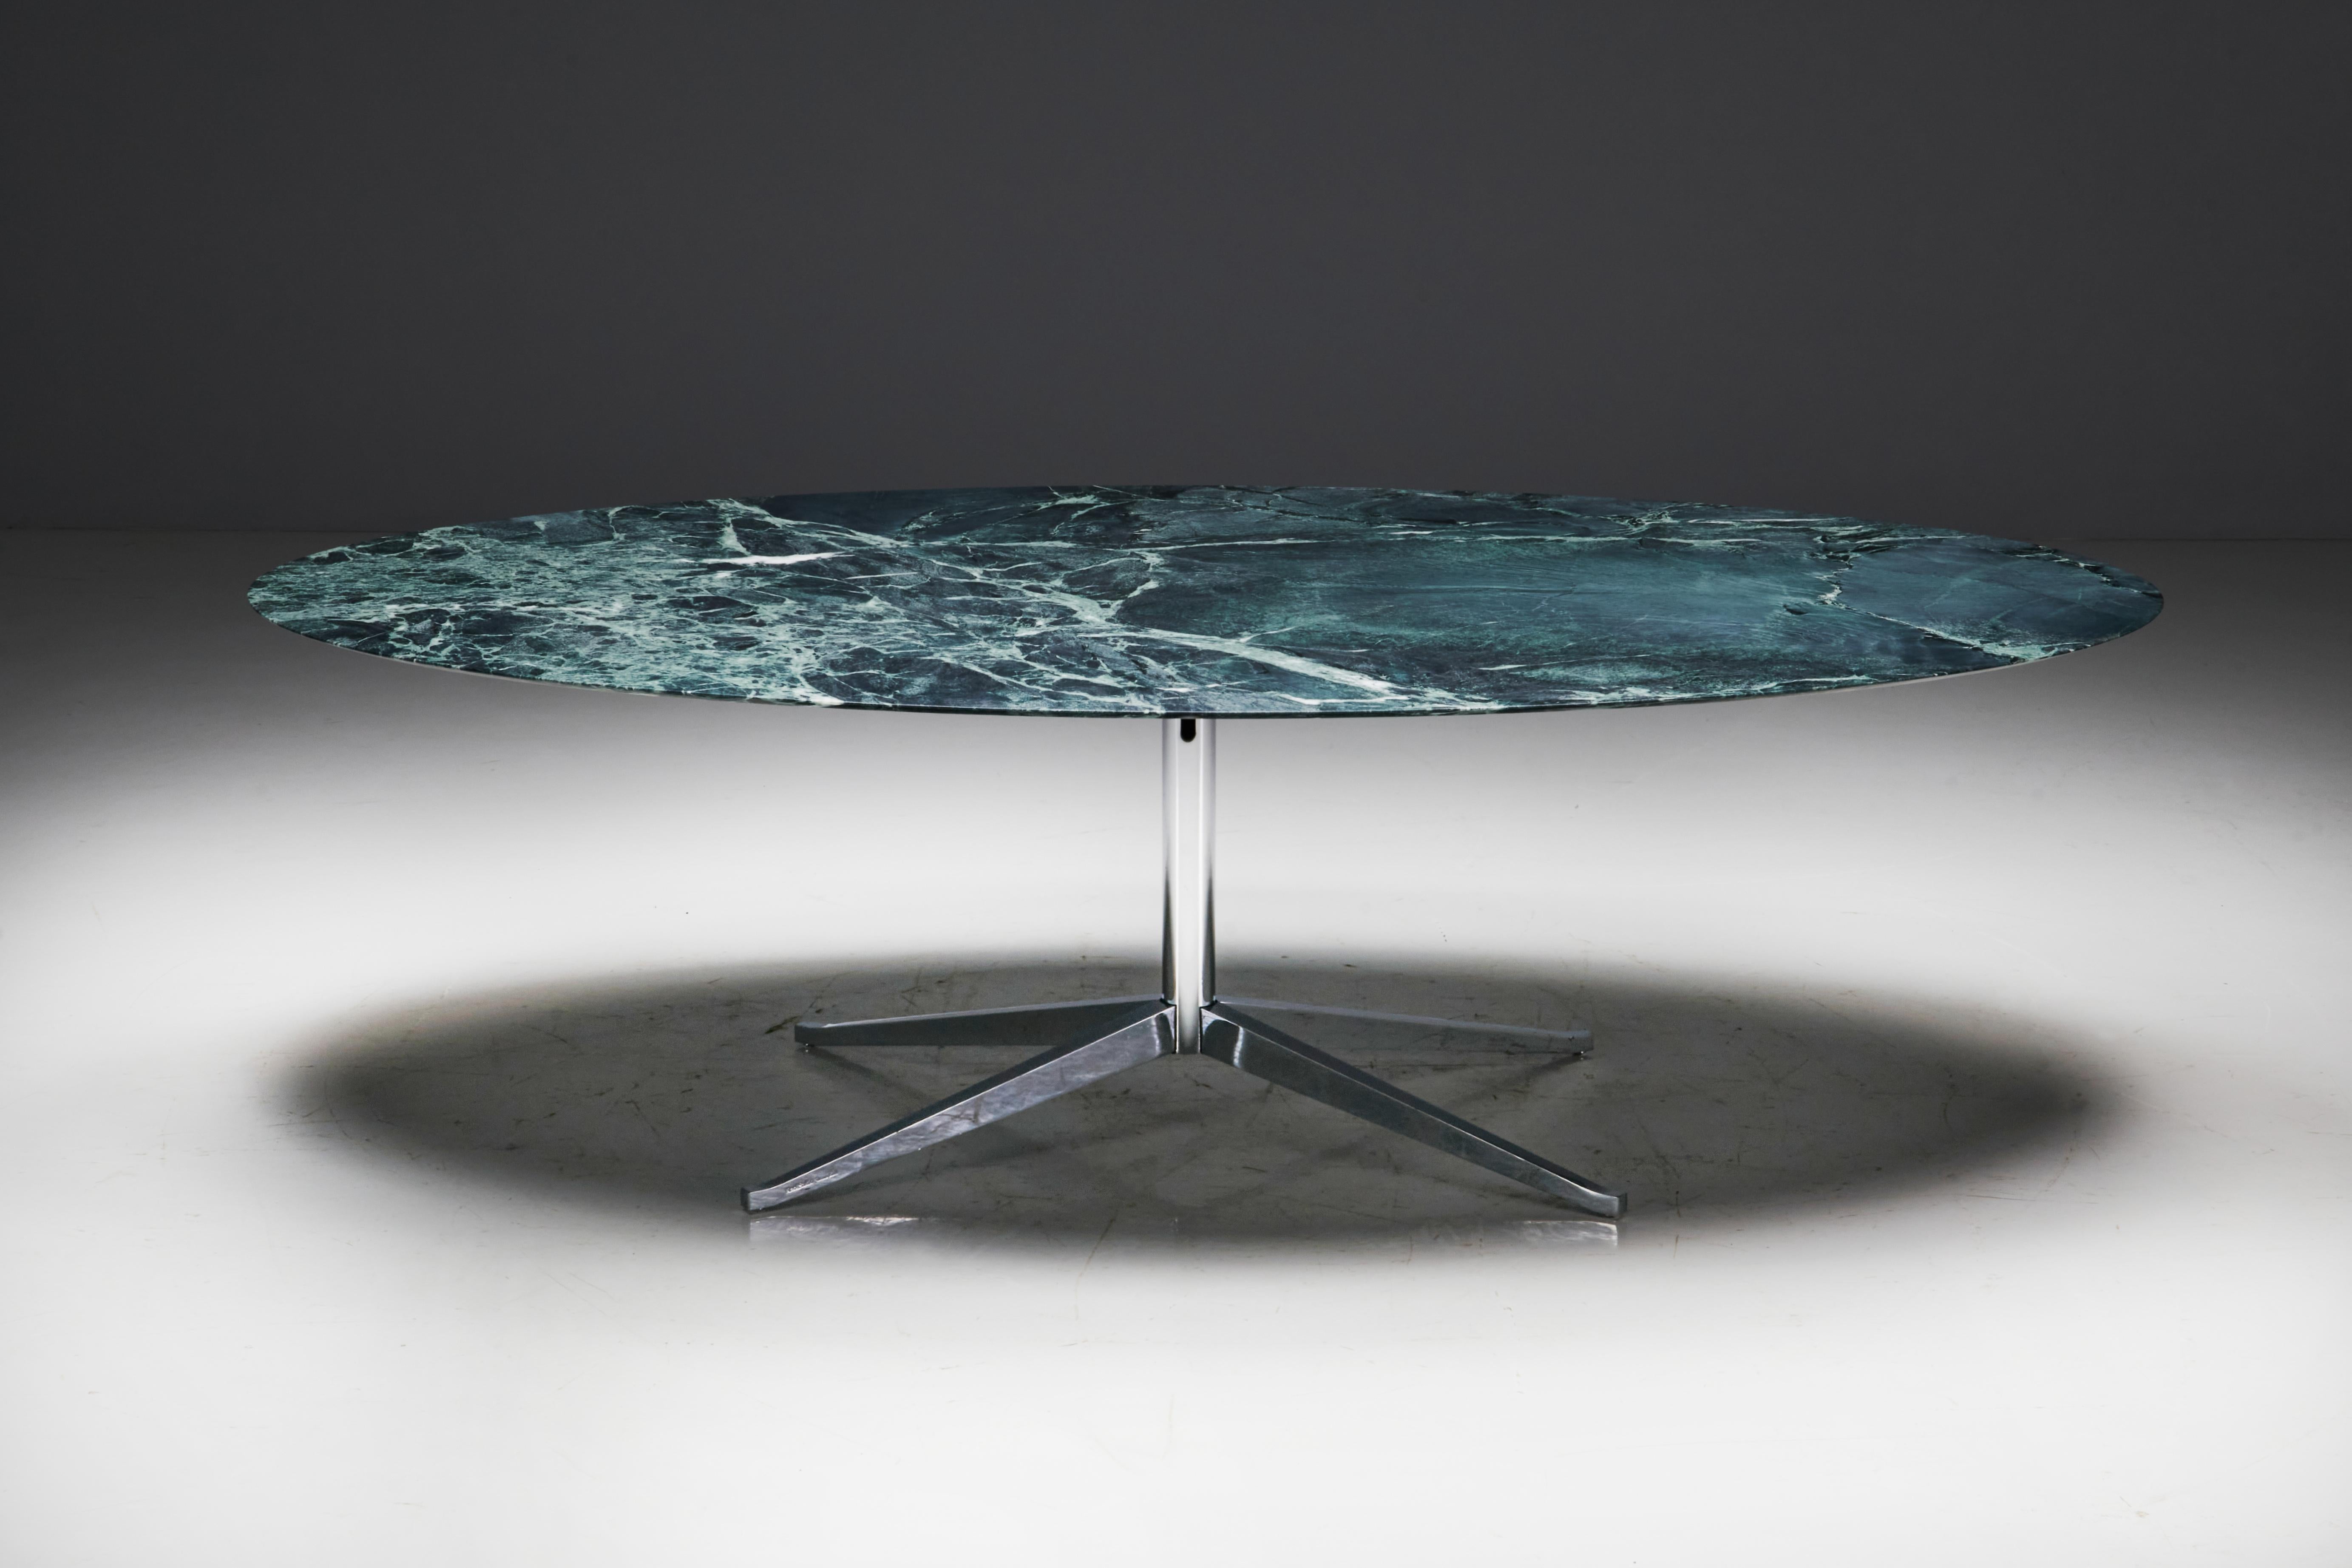 Fabriquée aux États-Unis dans les années 1960, cette table de salle à manger ovale conçue par Florence Knoll présente un design intemporel. Le plateau, sculpté dans un marbre vert massif, repose gracieusement sur une base en acier soutenue par